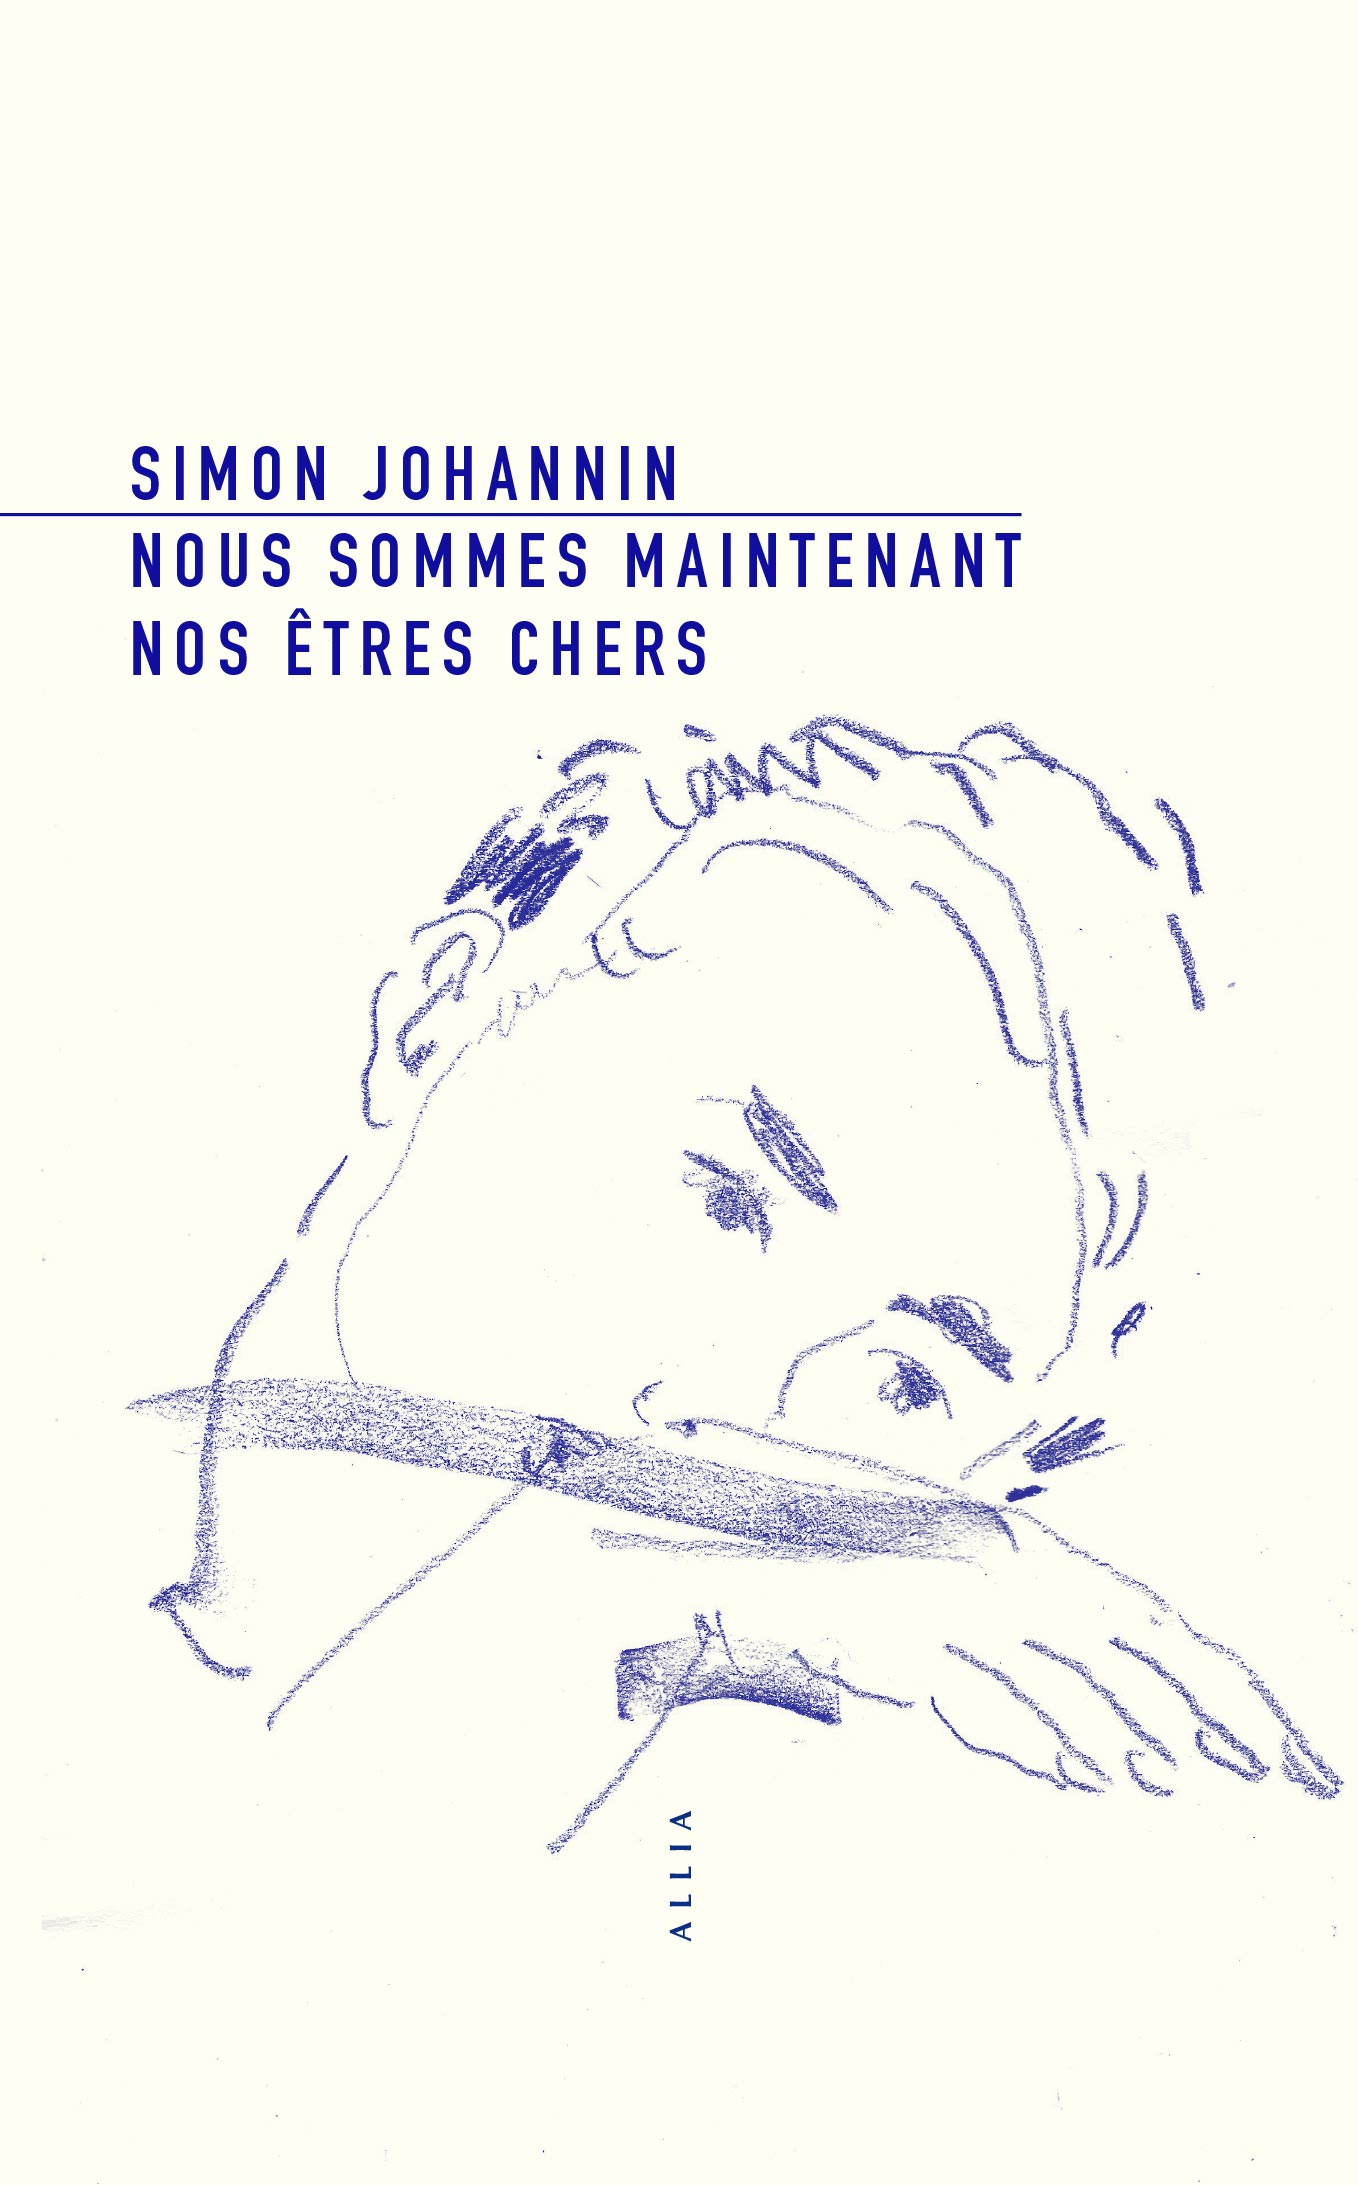 Printemps des poètes : lecture musicale de Simon Johannin